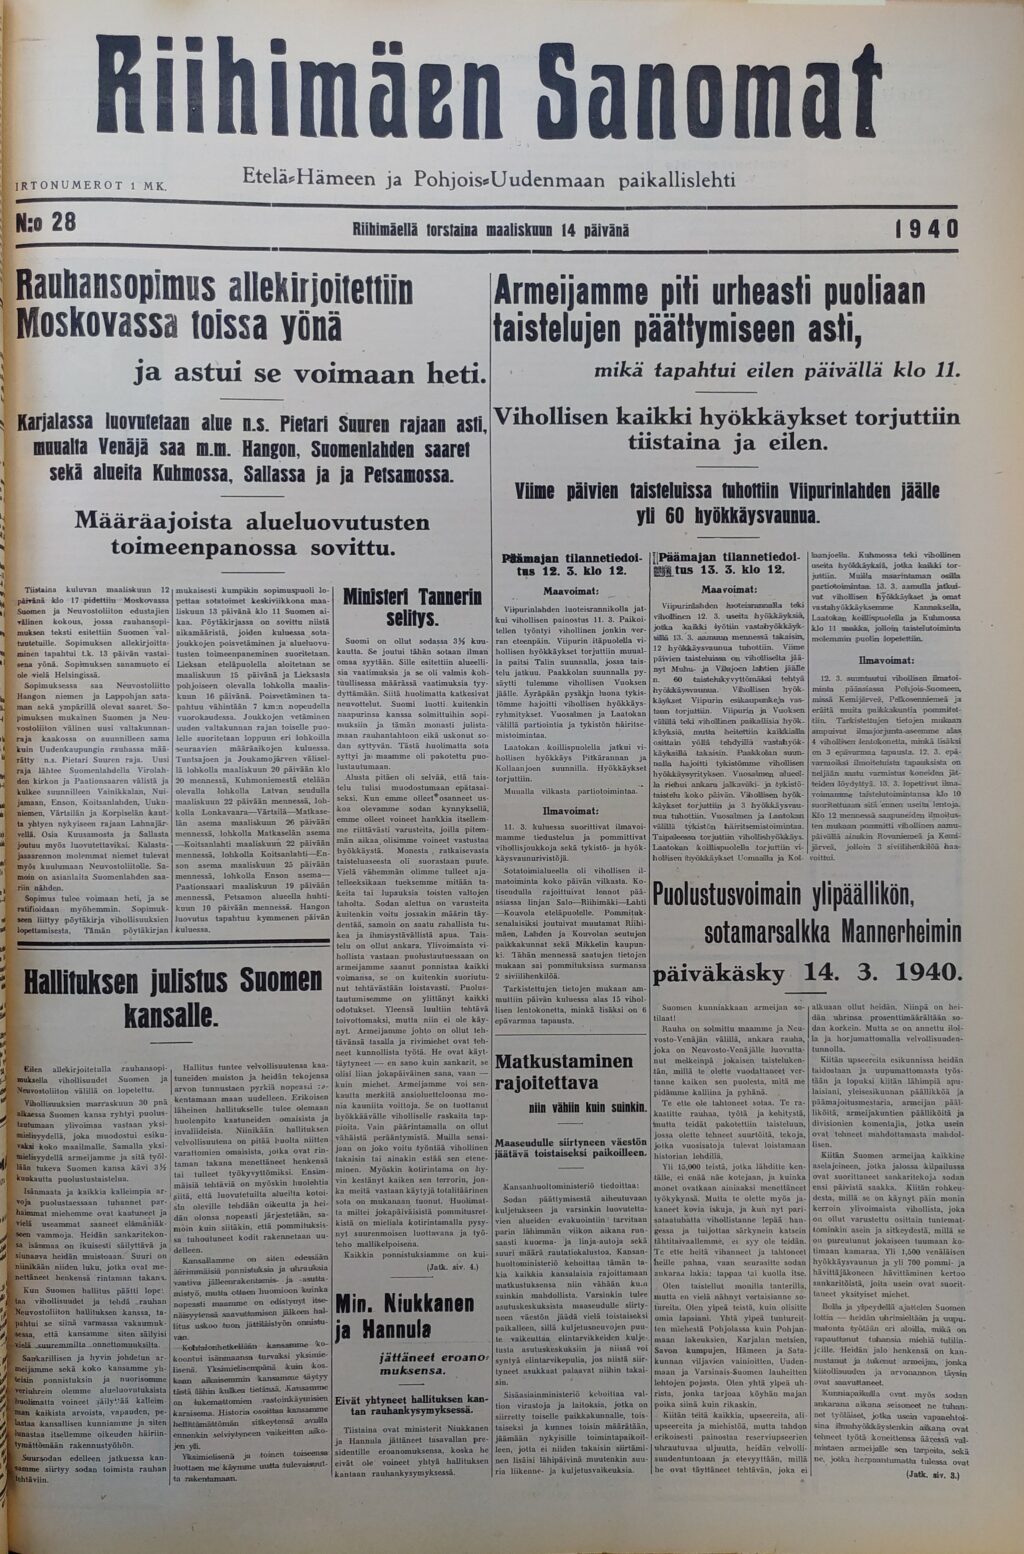 Riihimäen Sanomien etusivu 14.4.1940